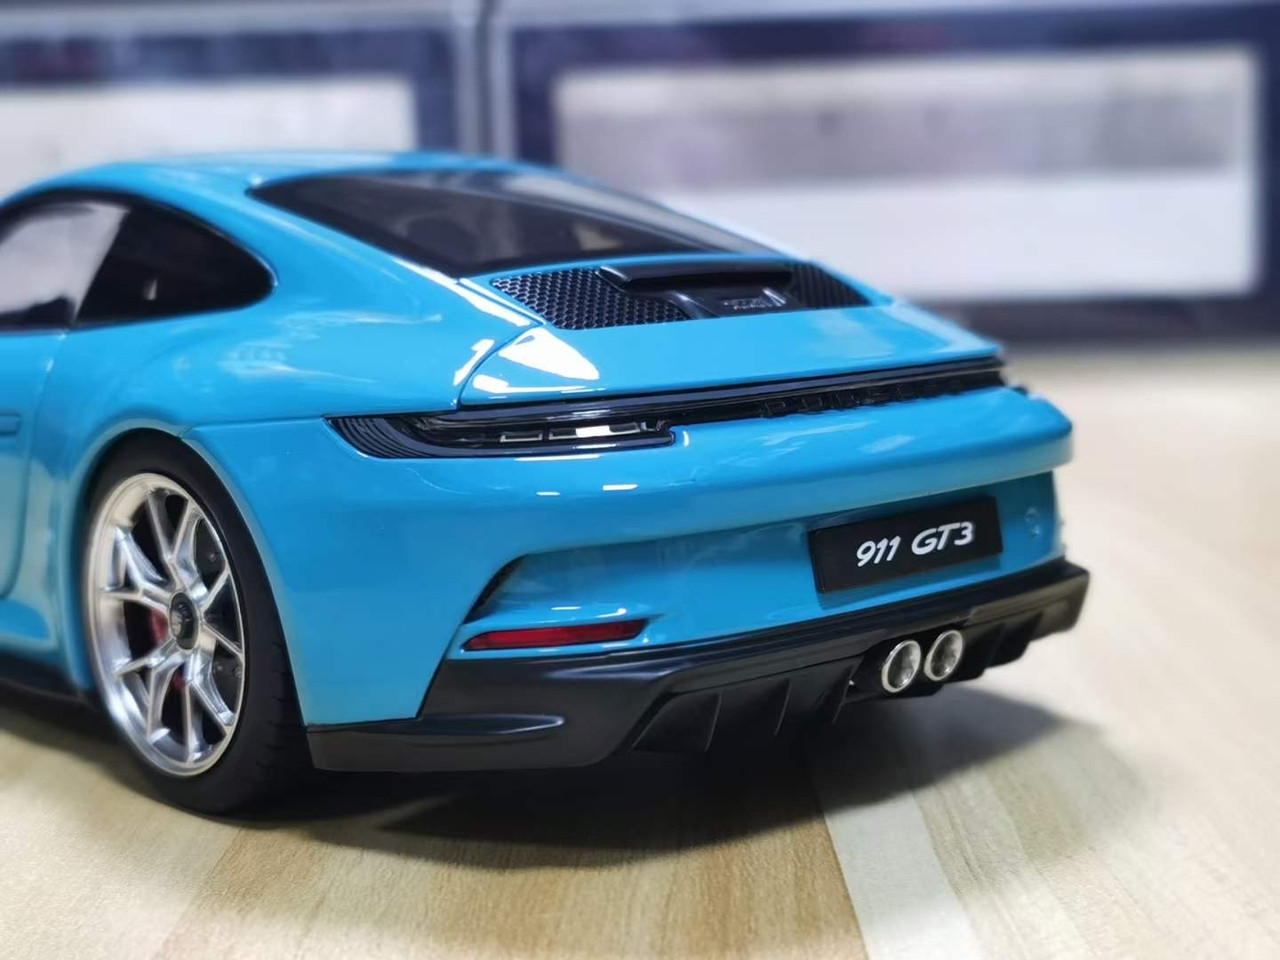 Maqueta de coche 1:18 Porsche 911 GT3 2021 azul de Norev